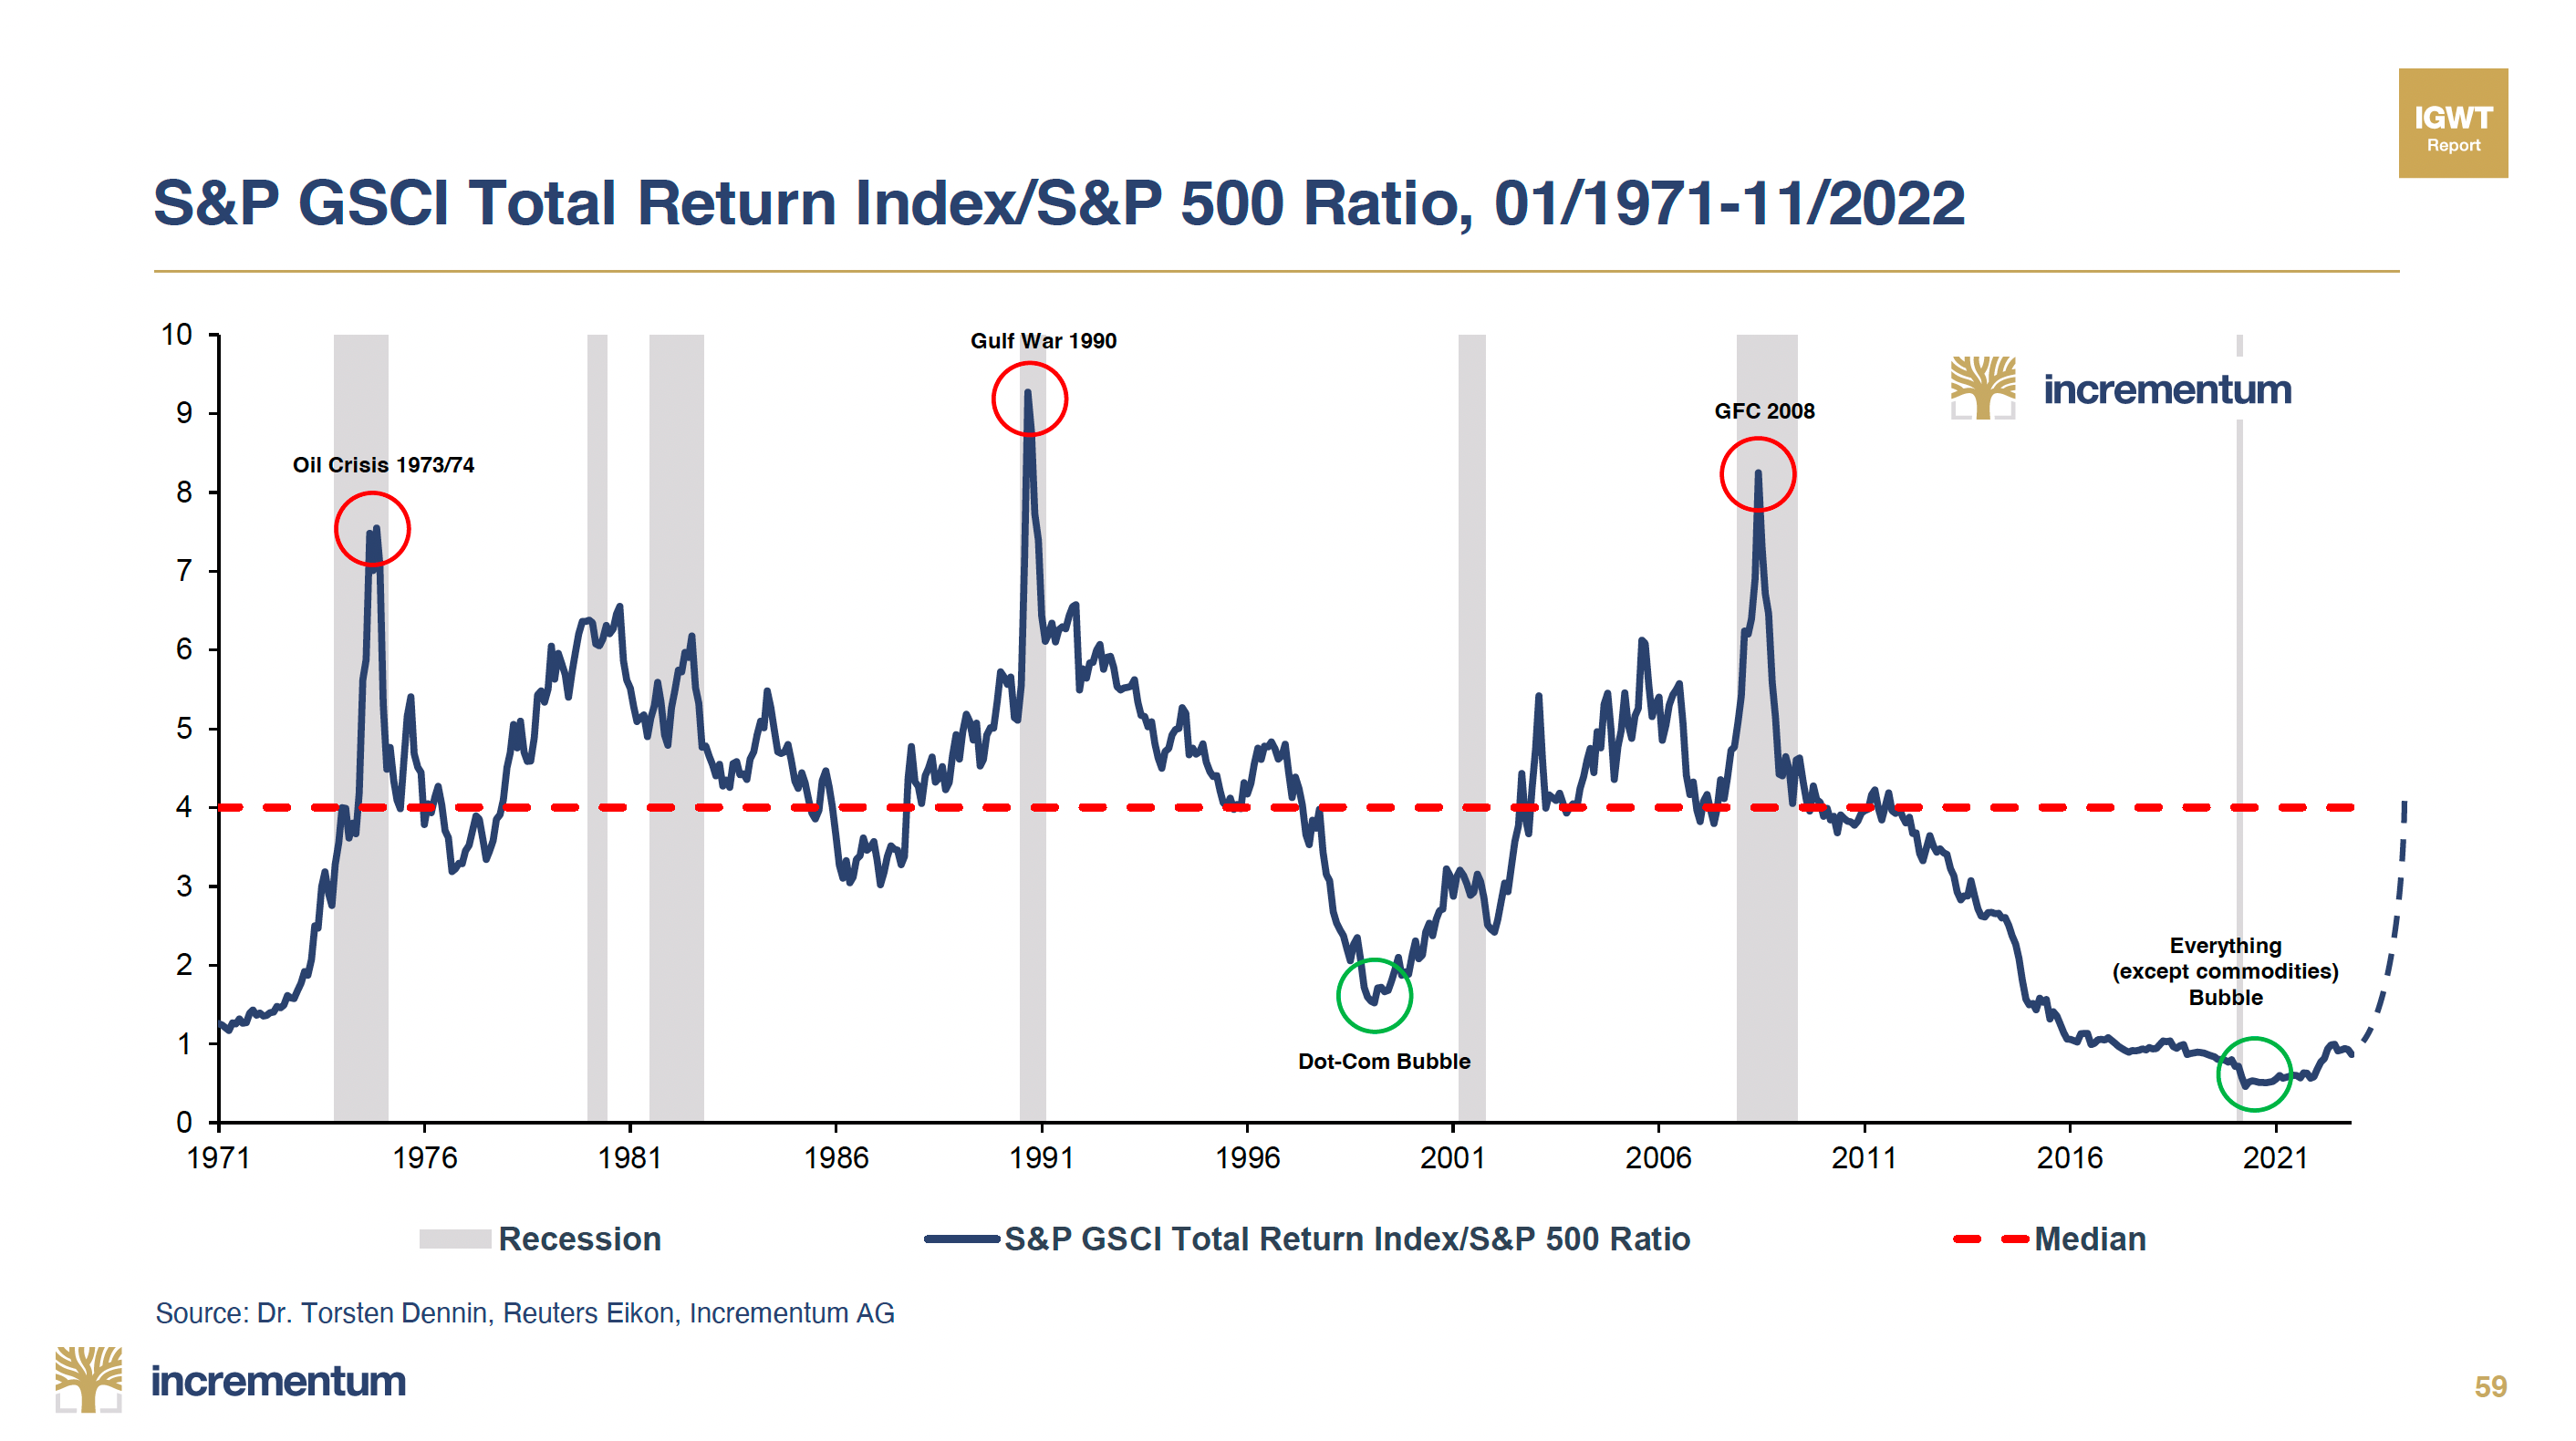 S&P GSCI Total Return Index/S&P 500 Ratio